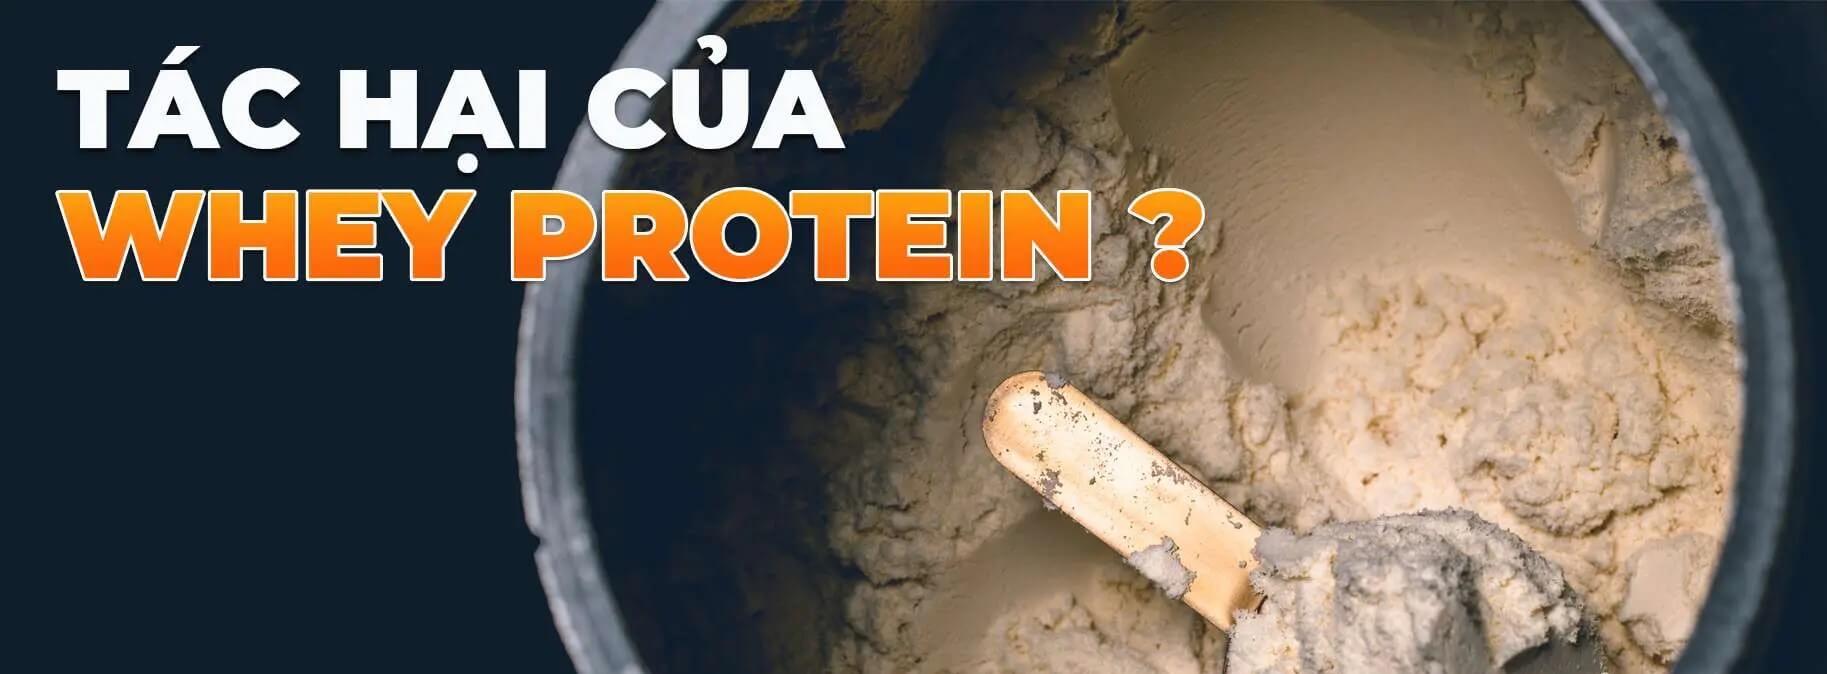 Tác hại của whey protein khi sử dụng không đúng cách